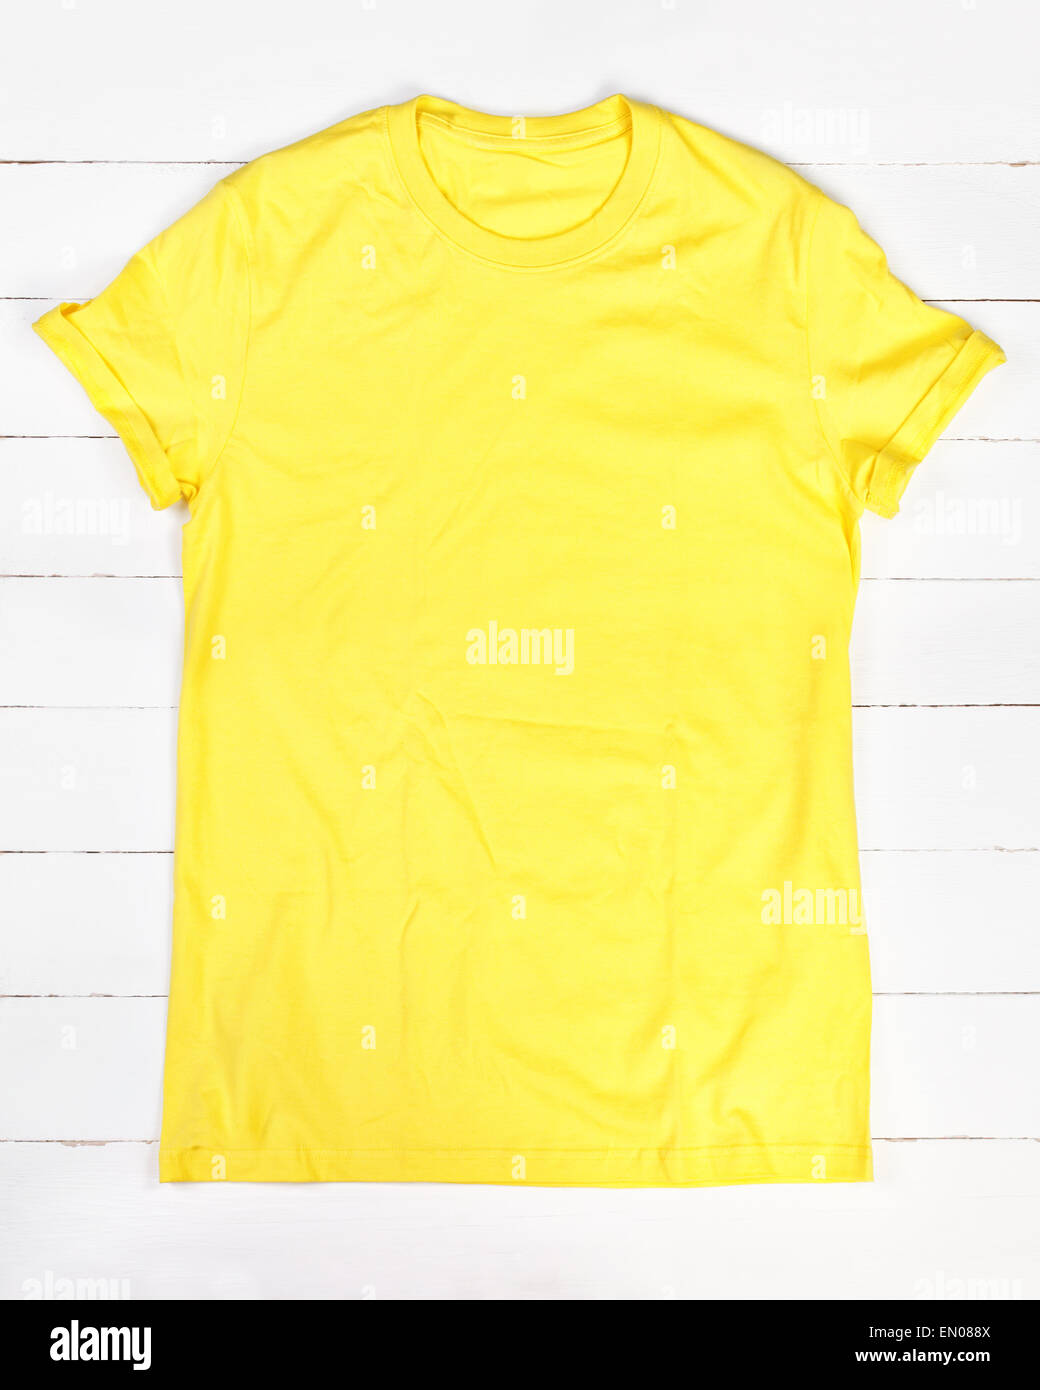 Yellow t-shirt Stock Photo